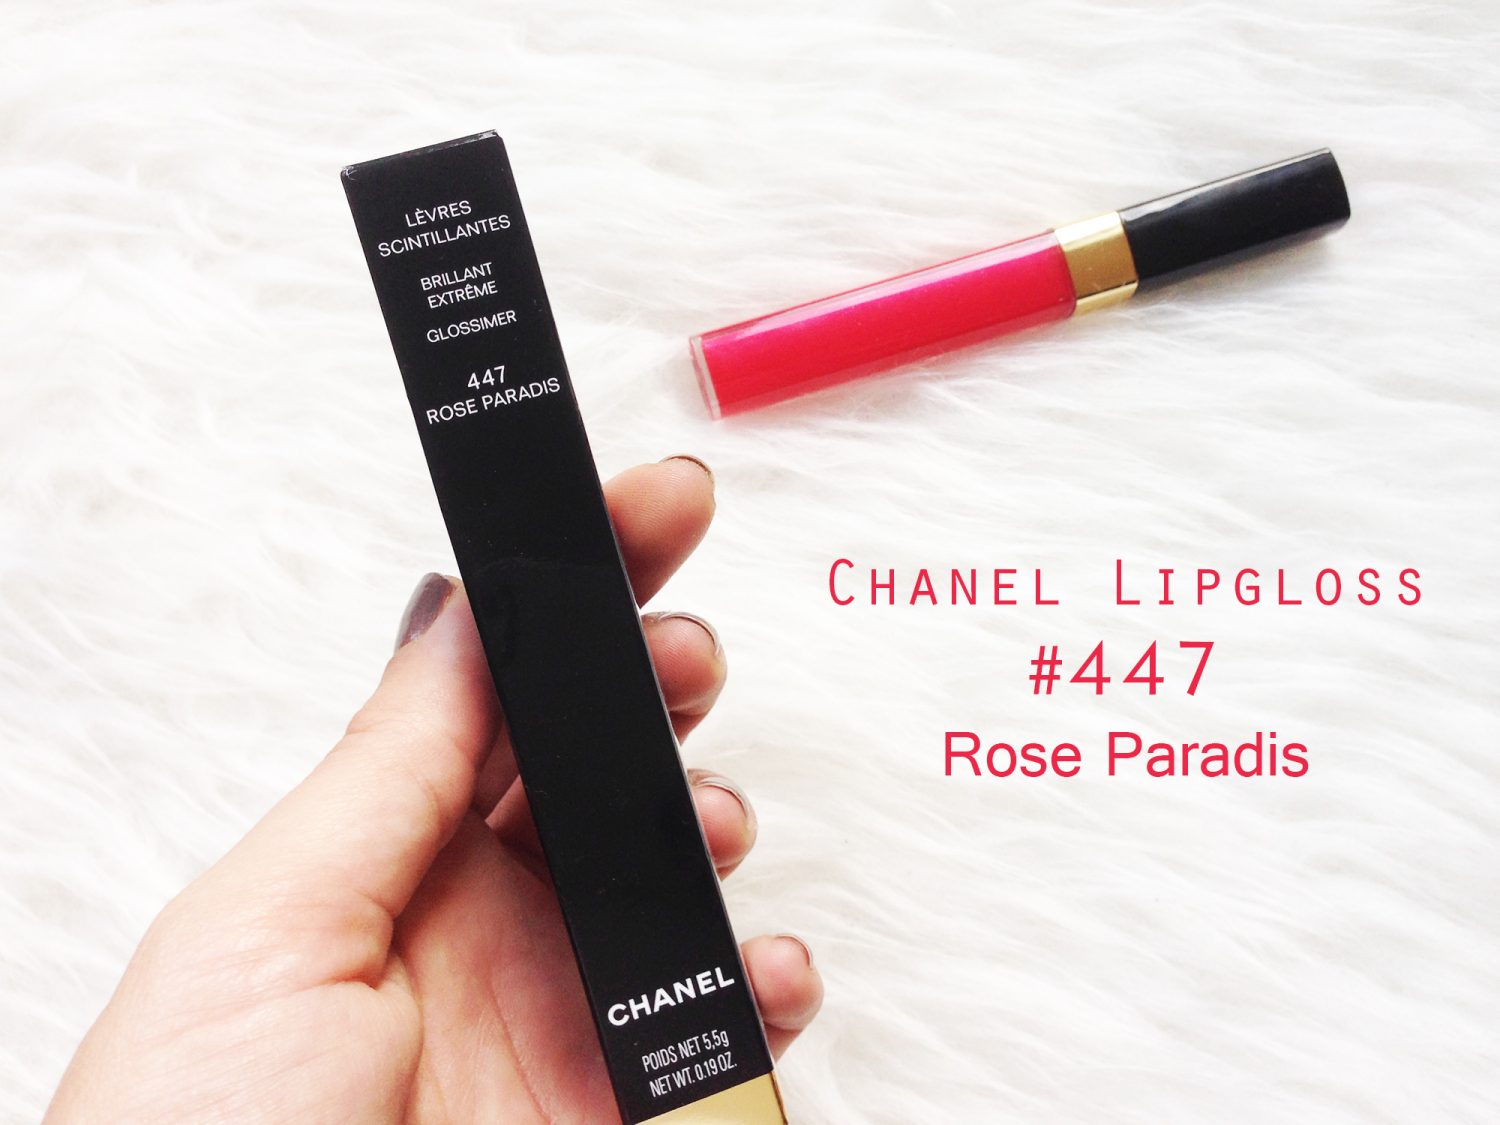 Chanel Lipgloss #447 Rose Paradis